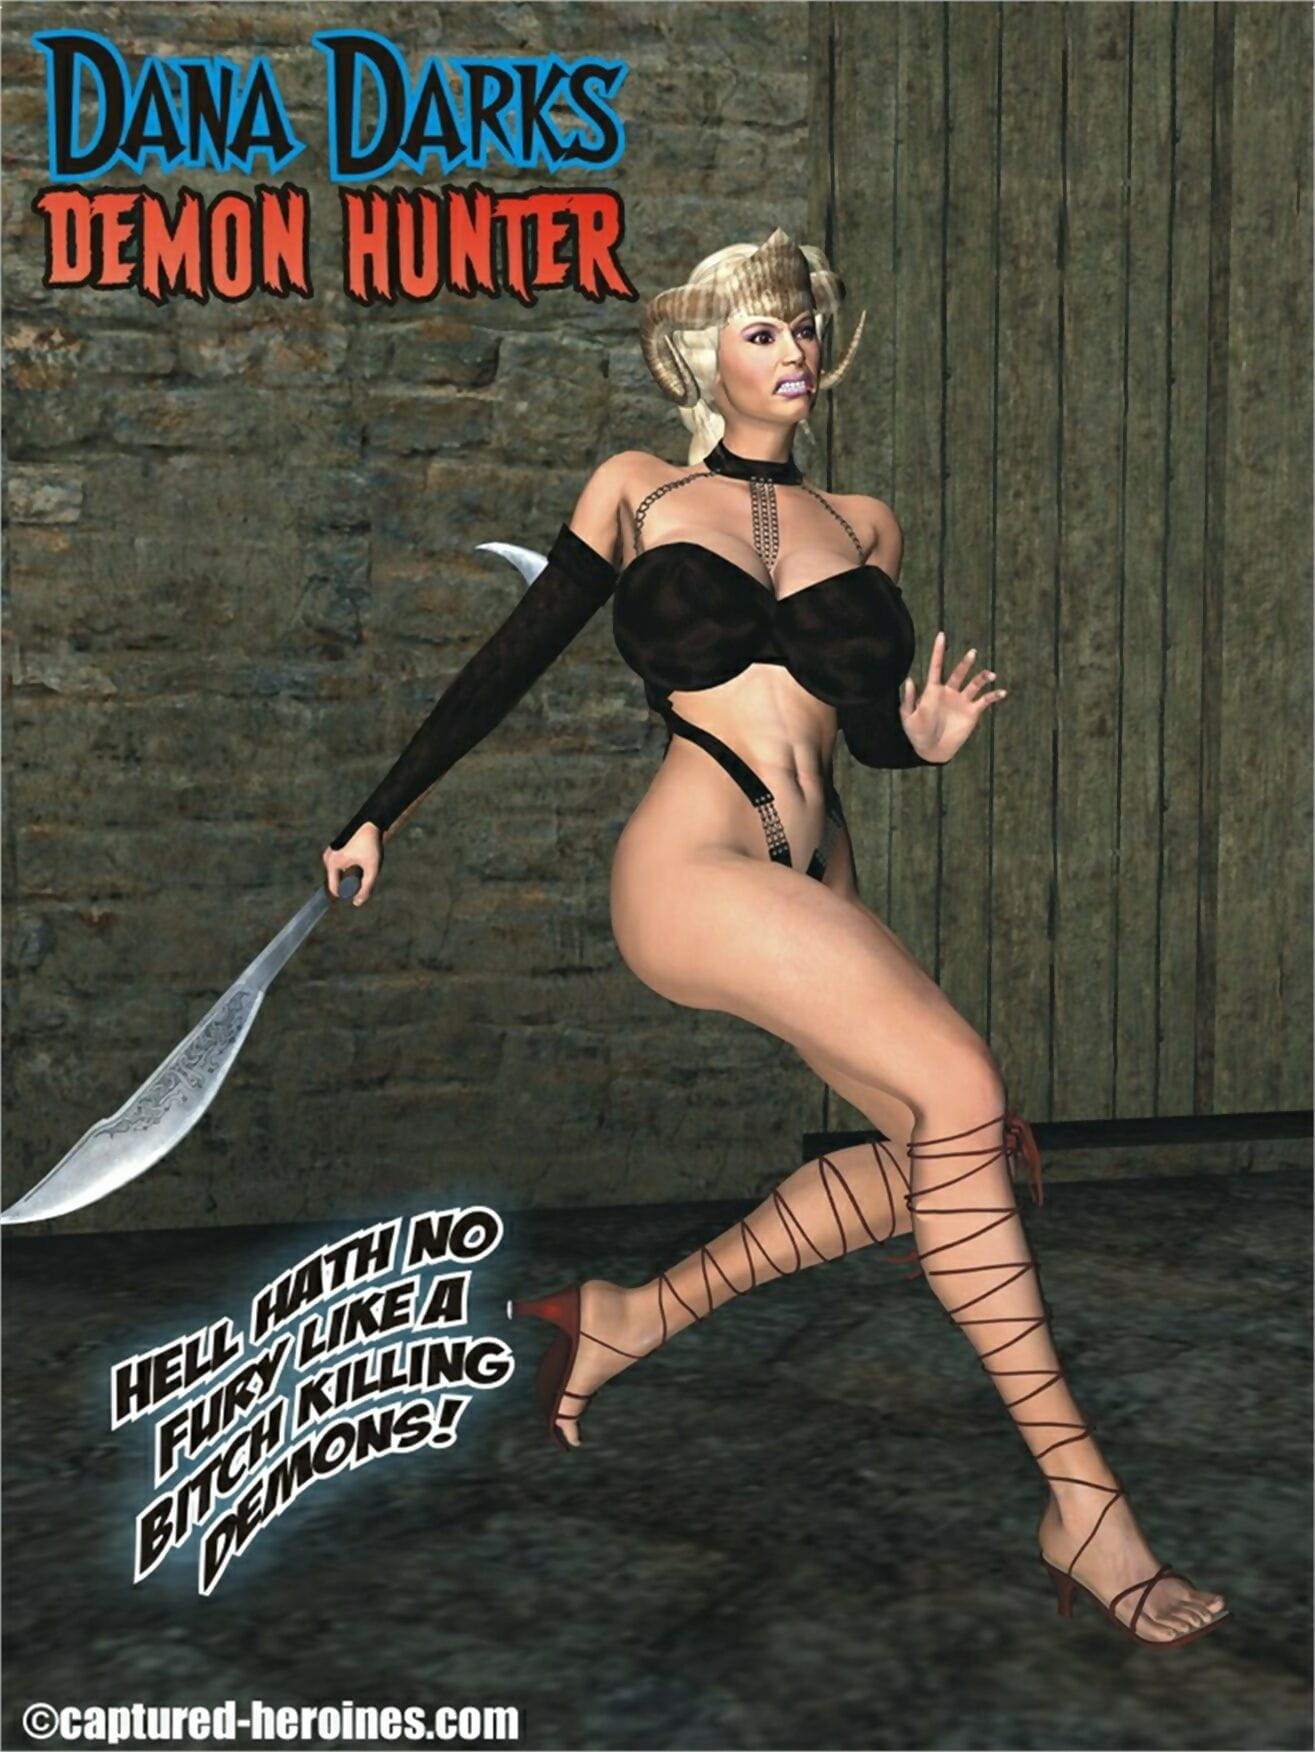 Erfasst Heldinnen Dana darks – Demon hunter page 1